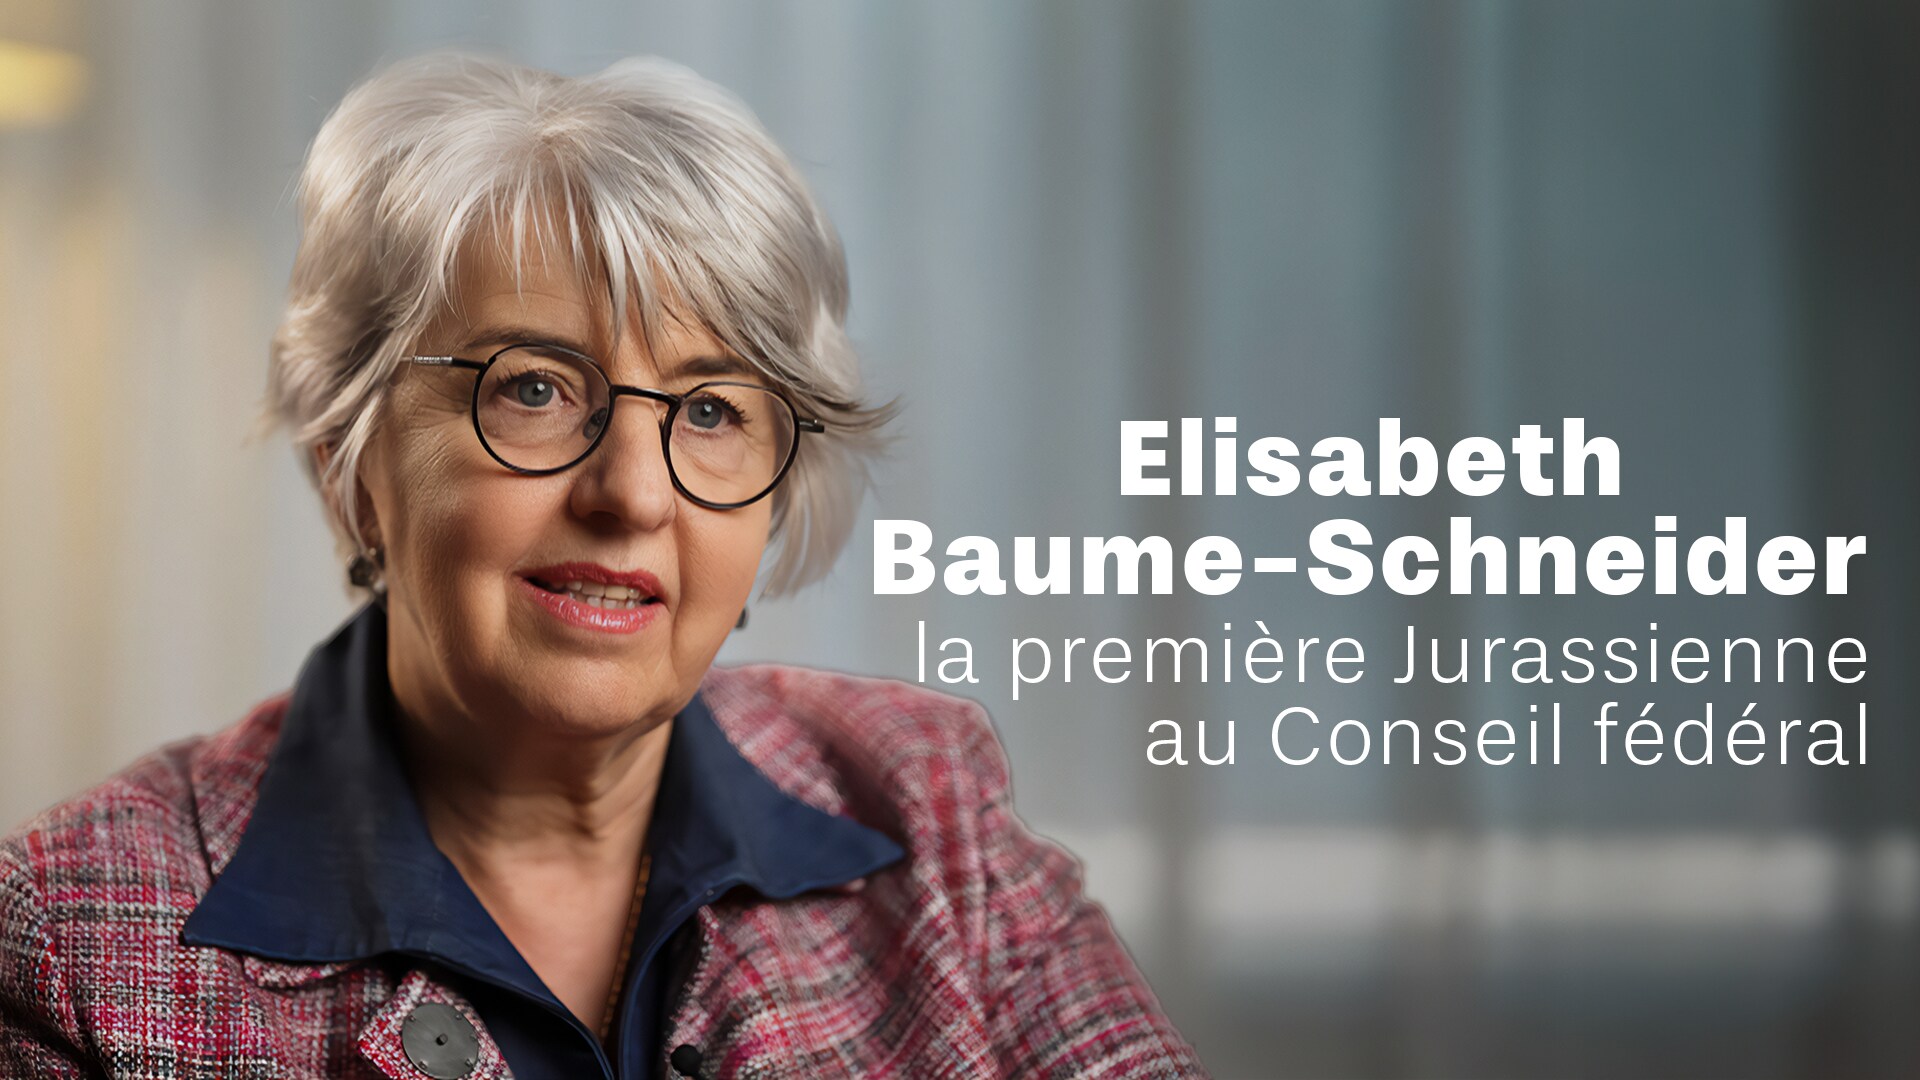 Elisabeth Baume-Schneider, la première Jurassienne au Conseil fédéral